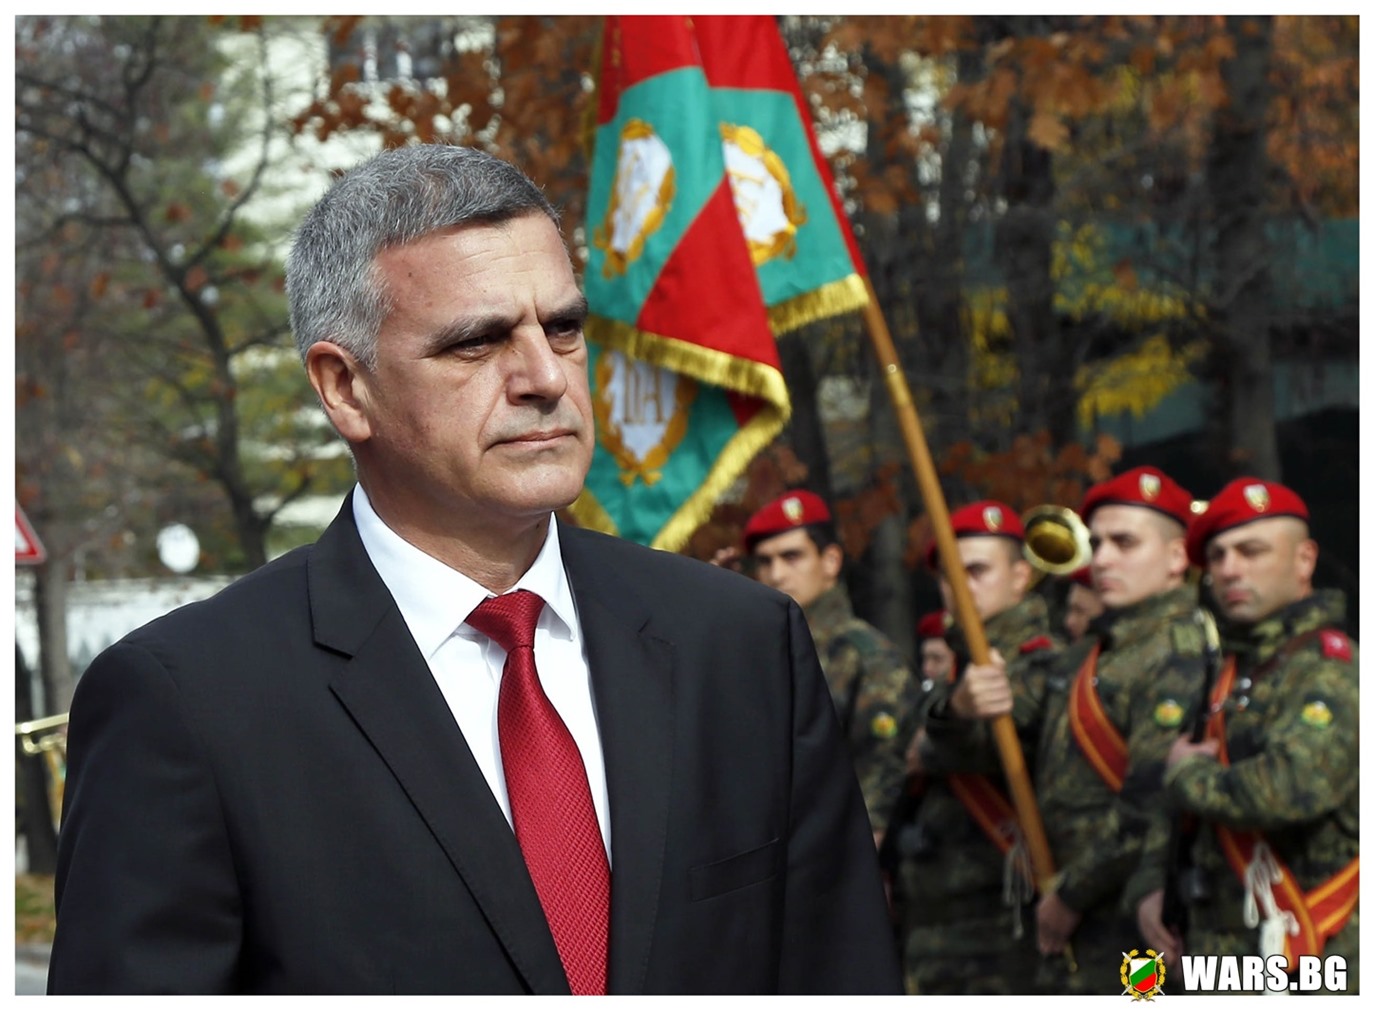 Янев: Нито един наш войник няма да участва в бойни действия без решение на НС или МС